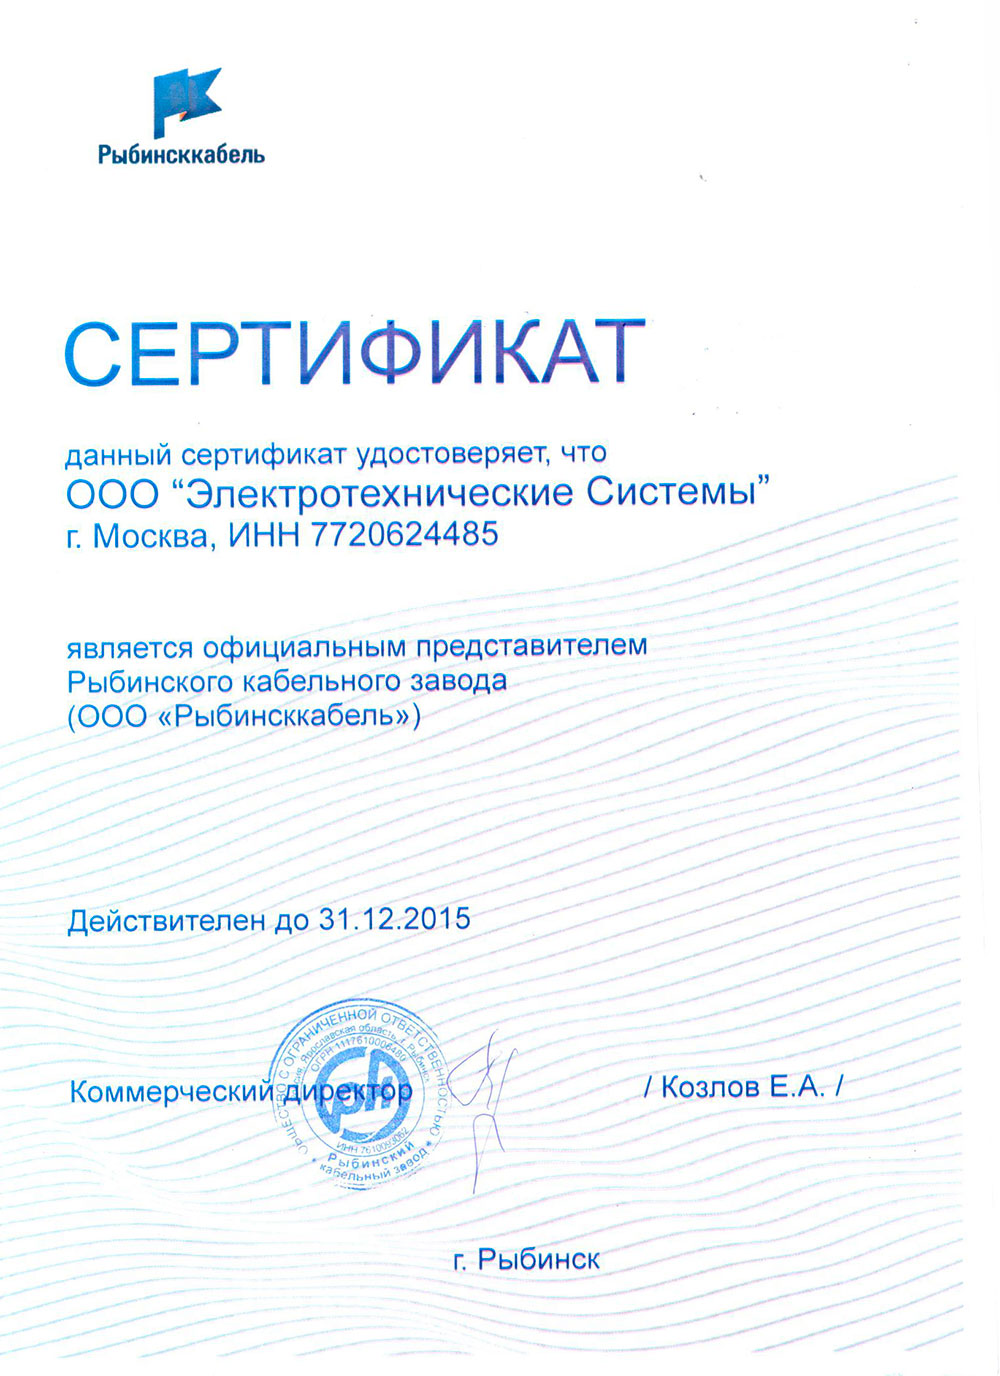 Компания ООО "Электротехнические Системы" получила статус официального представителя ООО "Рыбинсккабель"